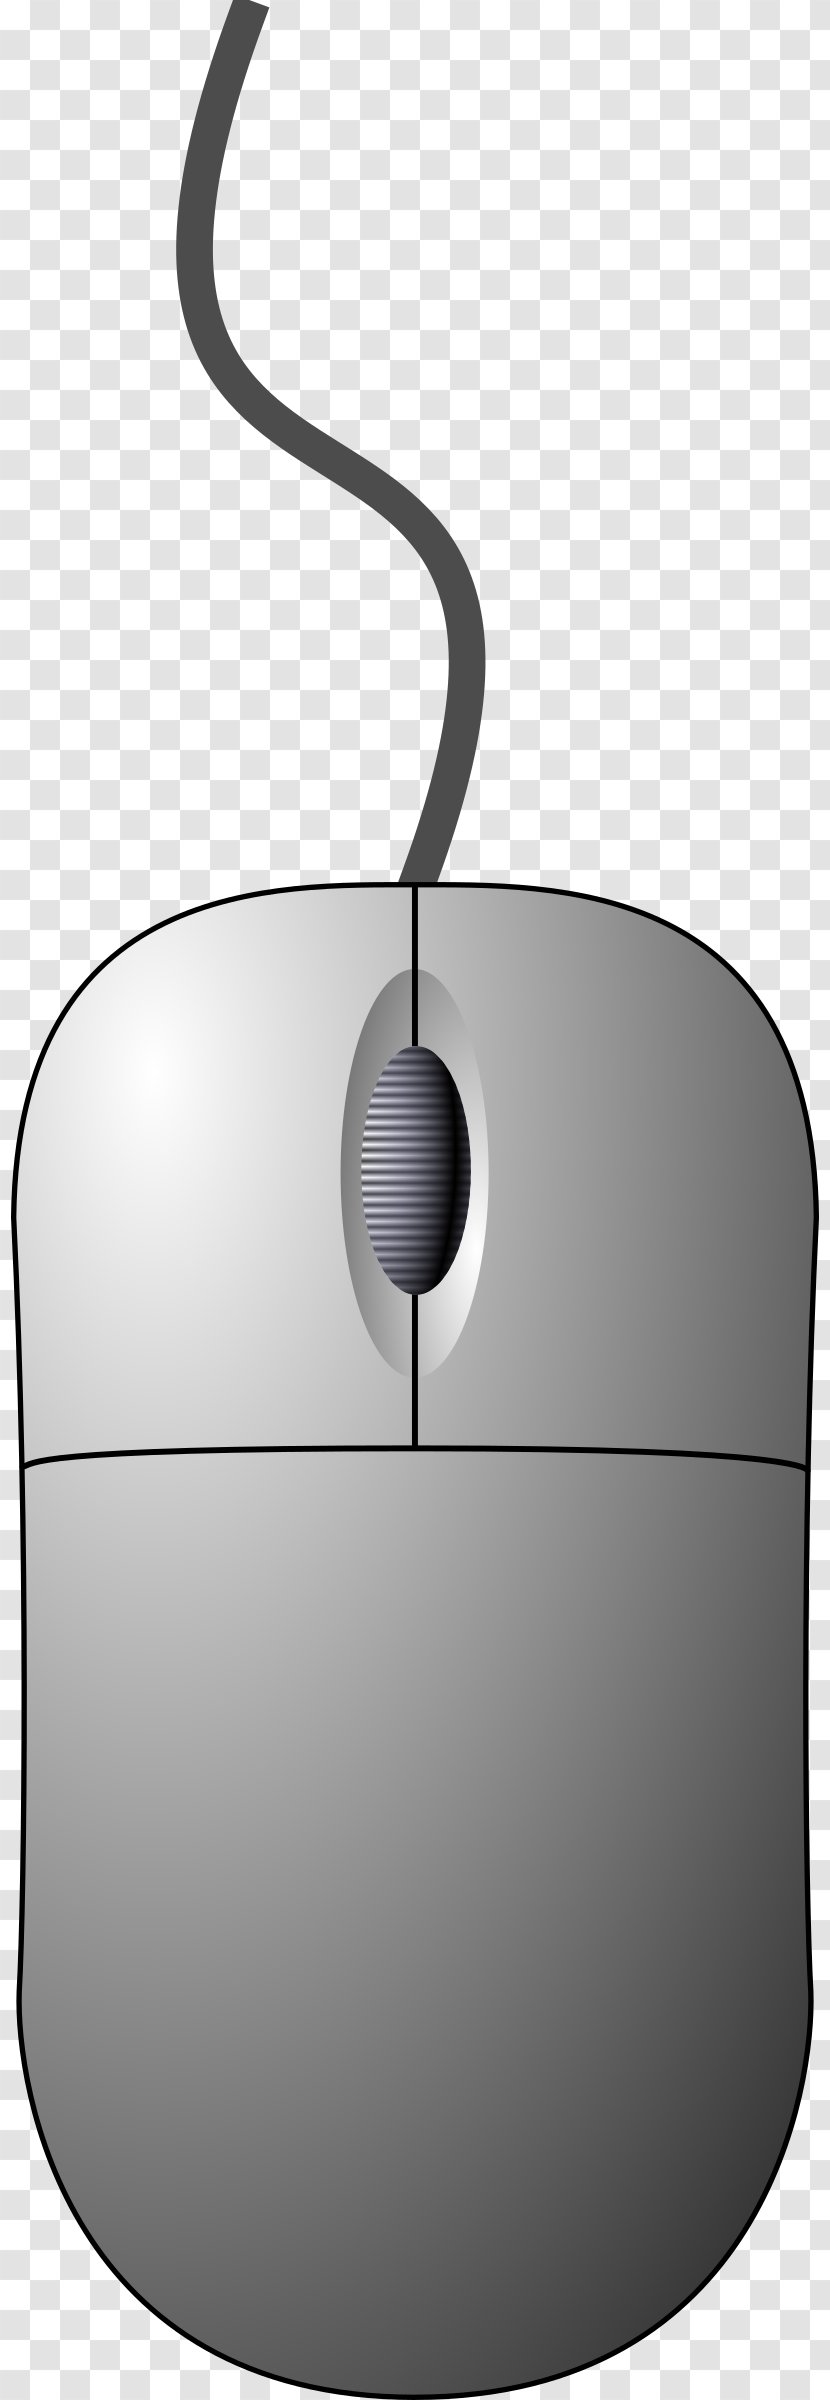 Computer Mouse Clip Art - Component Transparent PNG